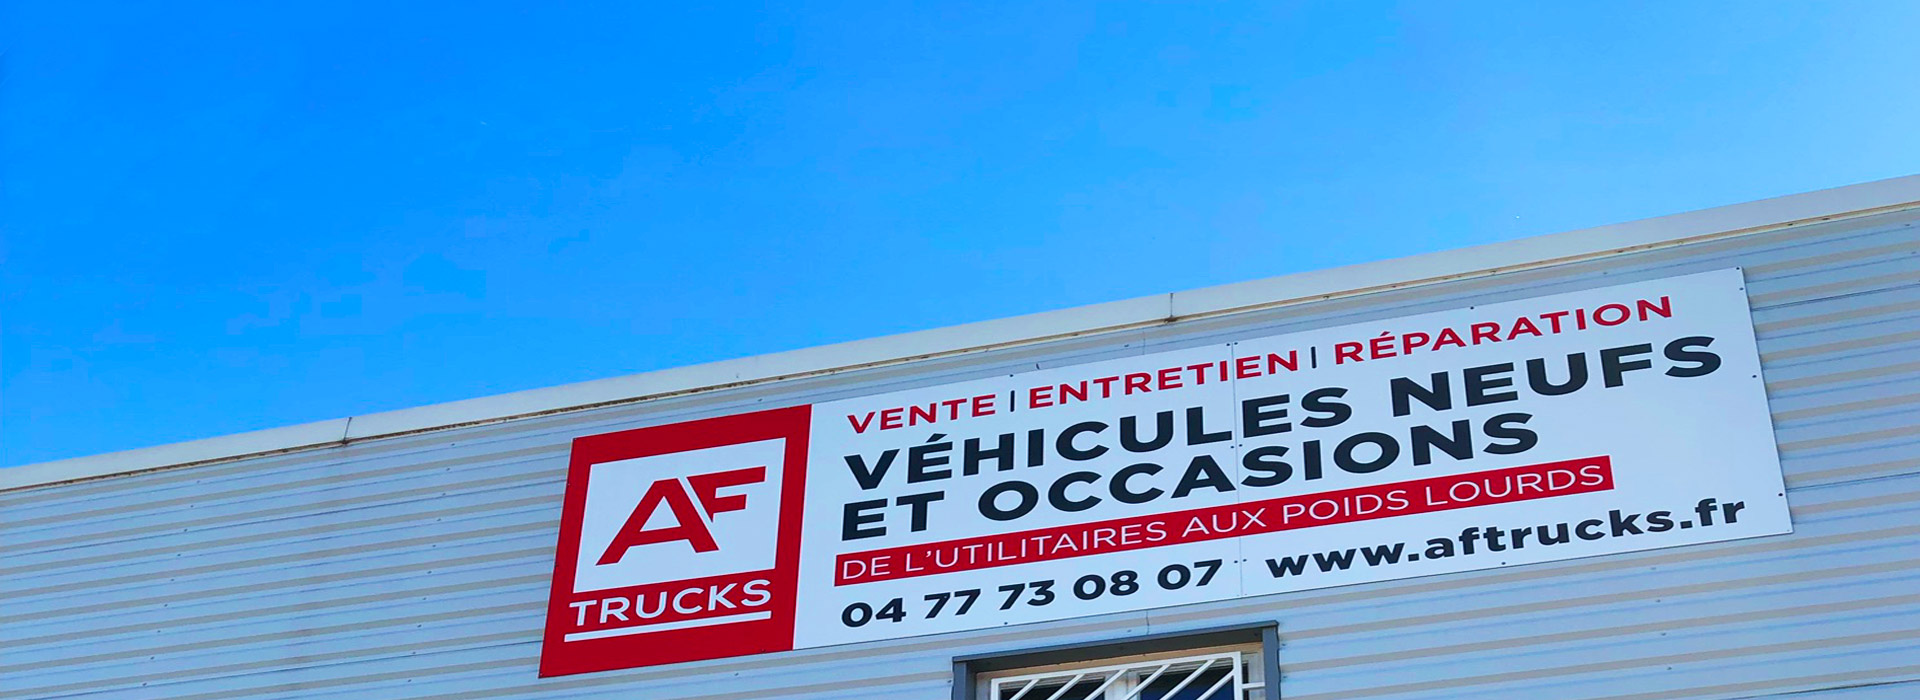 AF TRUCKS vehicule utitaire poids lourd neuf occasion vente entretien location financement ISUZU PIAGGIO SNORKEL